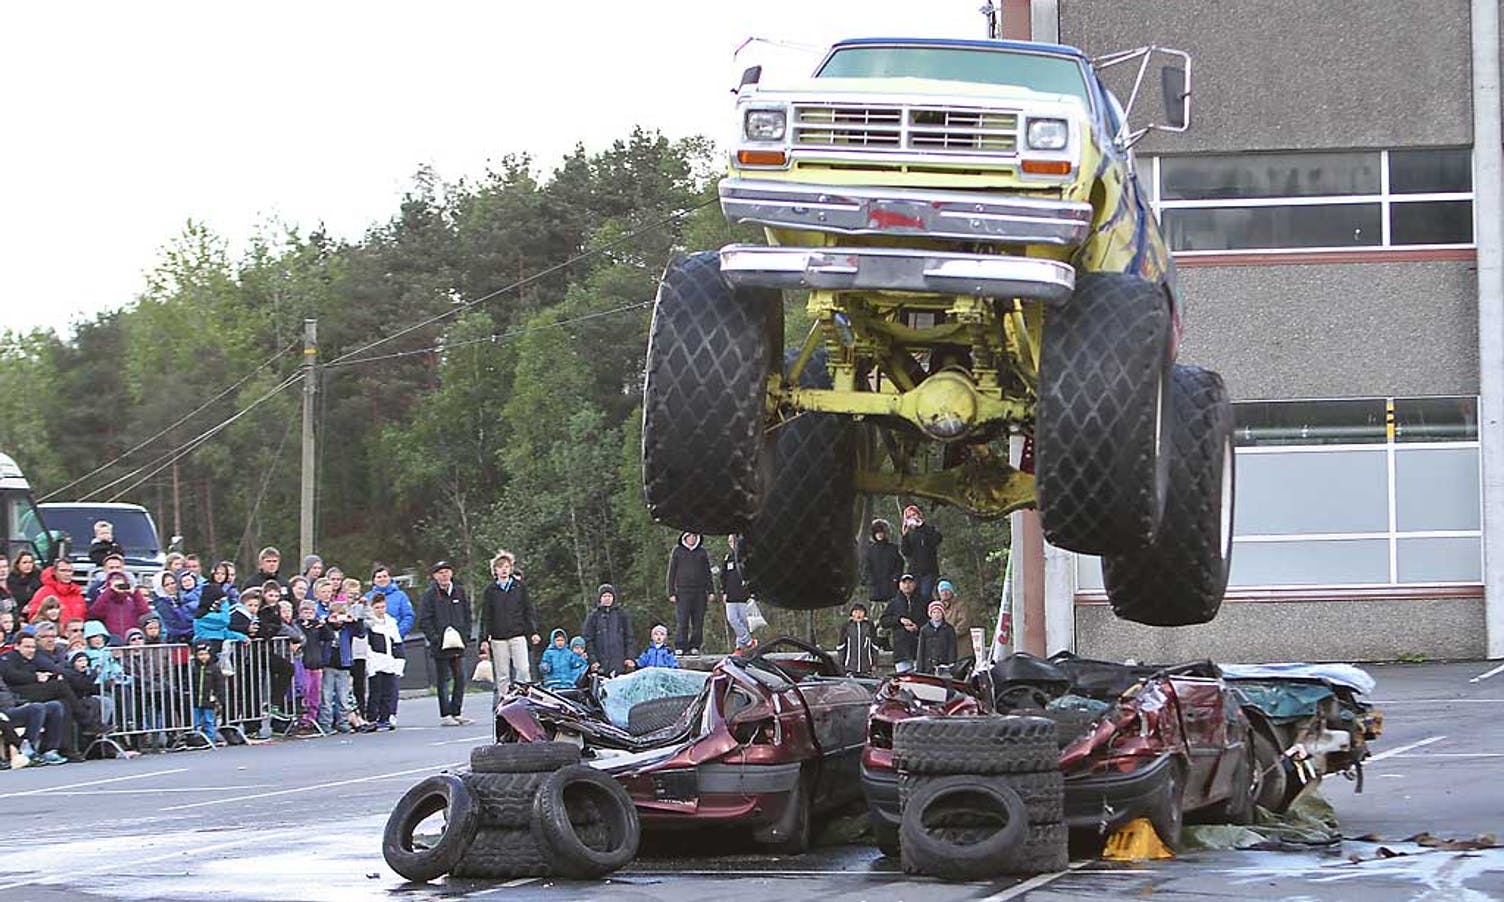 Showet blei avlsutta med tradisjonell monstertruck-kjøring. (Foto: KVB)